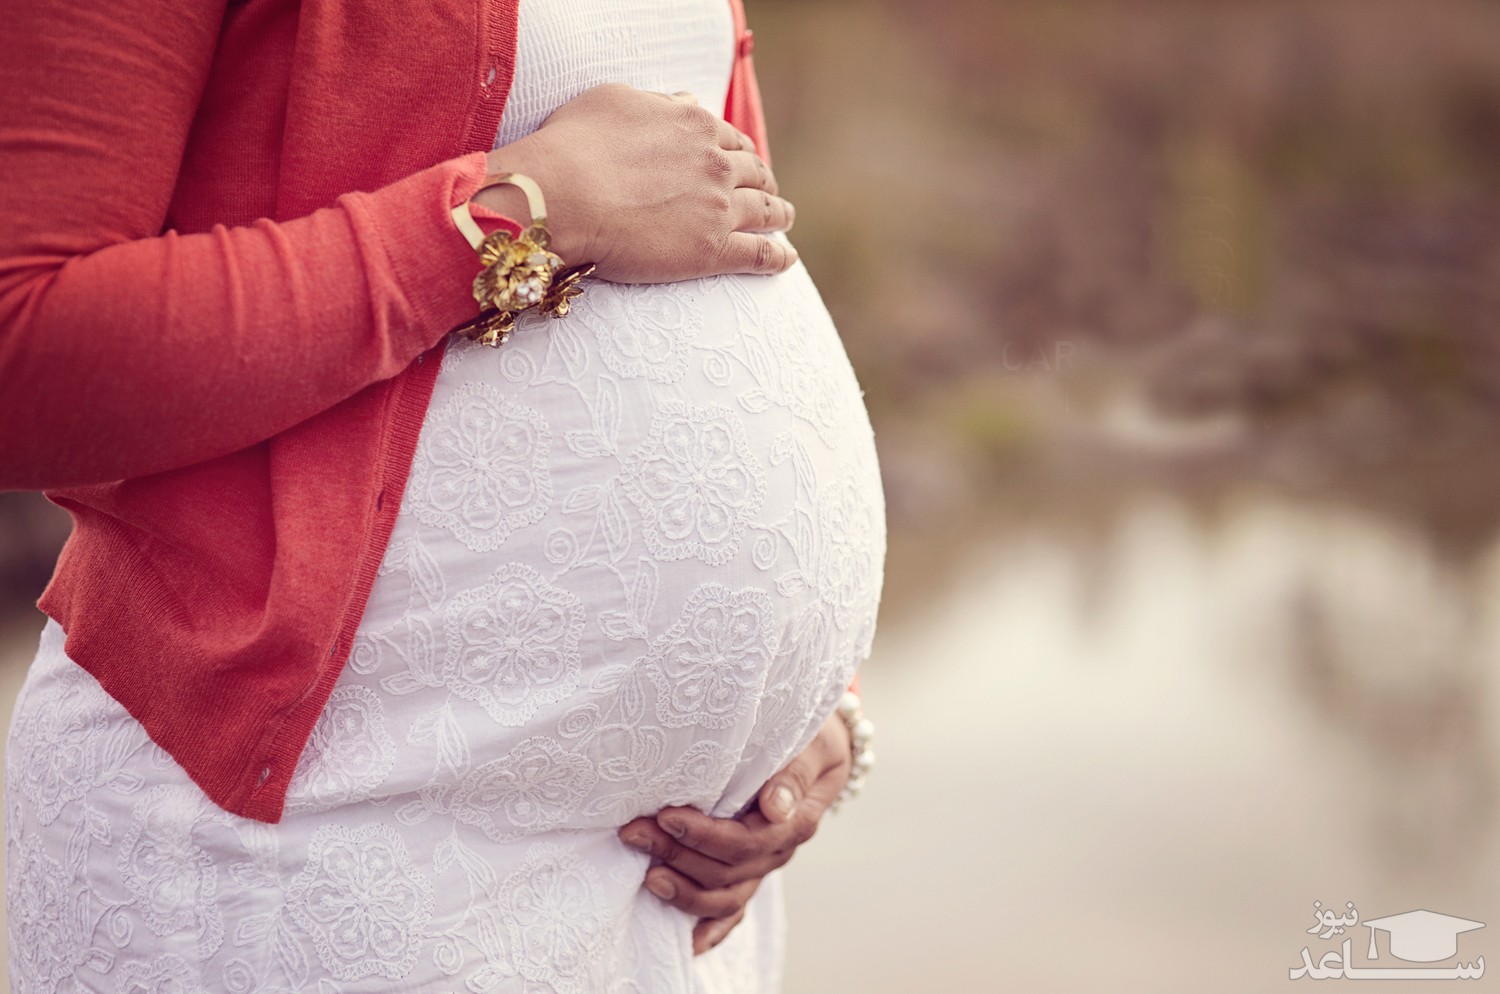 با خواص و مضرات جگر  در دوران بارداری آشنا شوید.